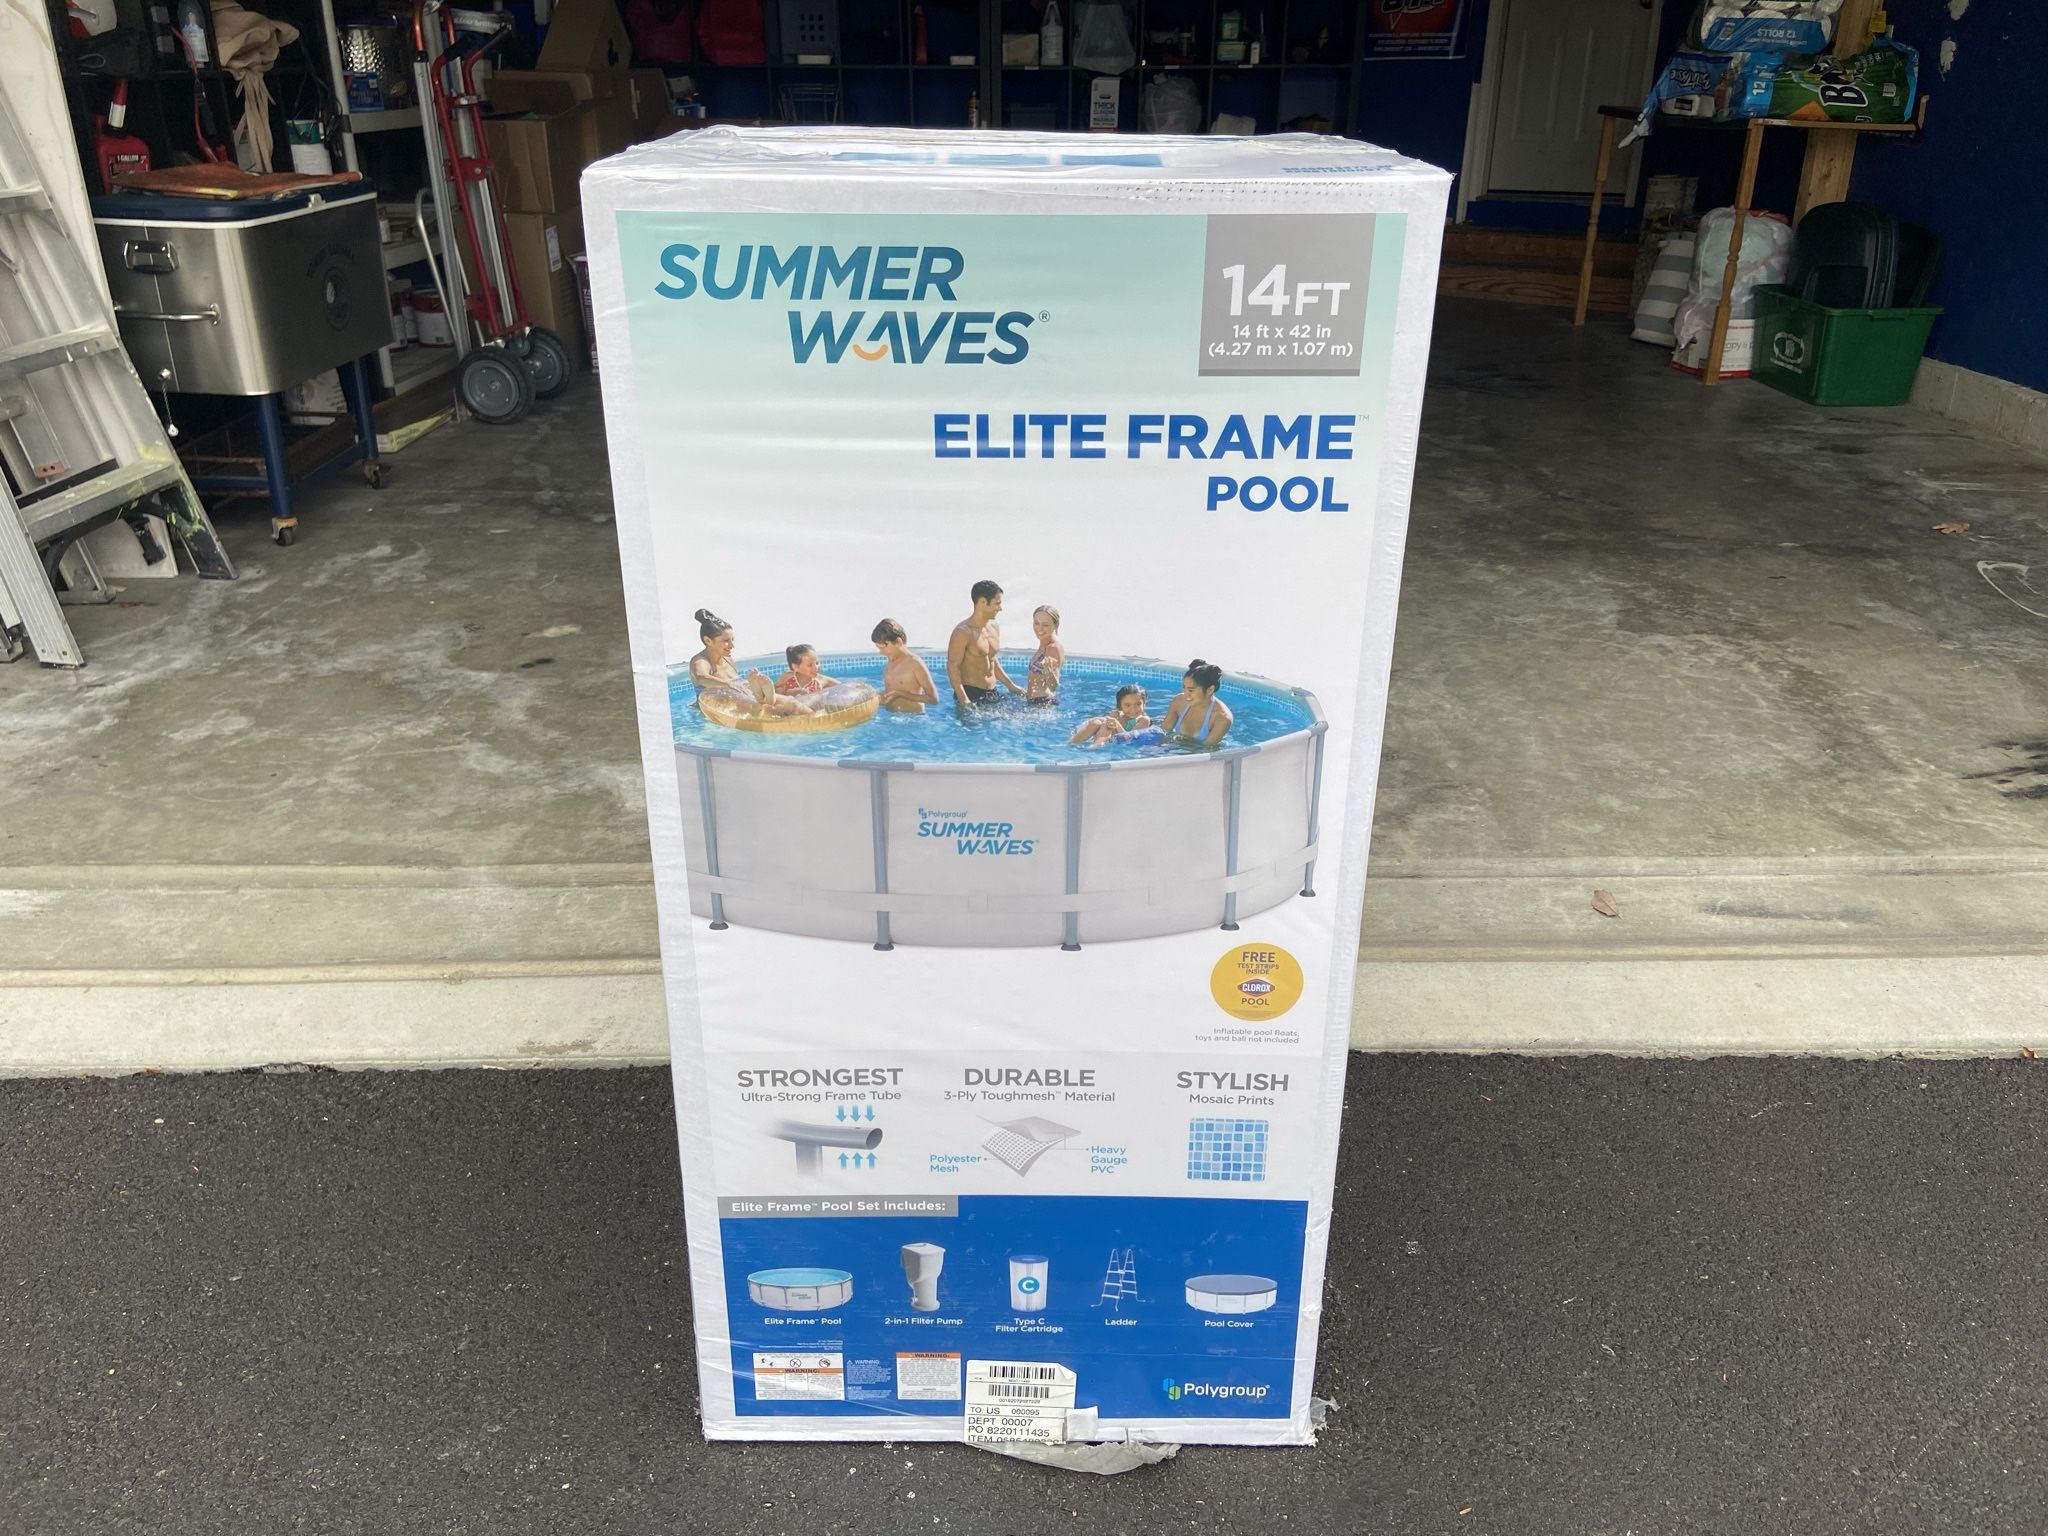 Summer Waves 14FT Elite Frame Pool w/ Pump, Filter, Ladder & Cover - Brand New